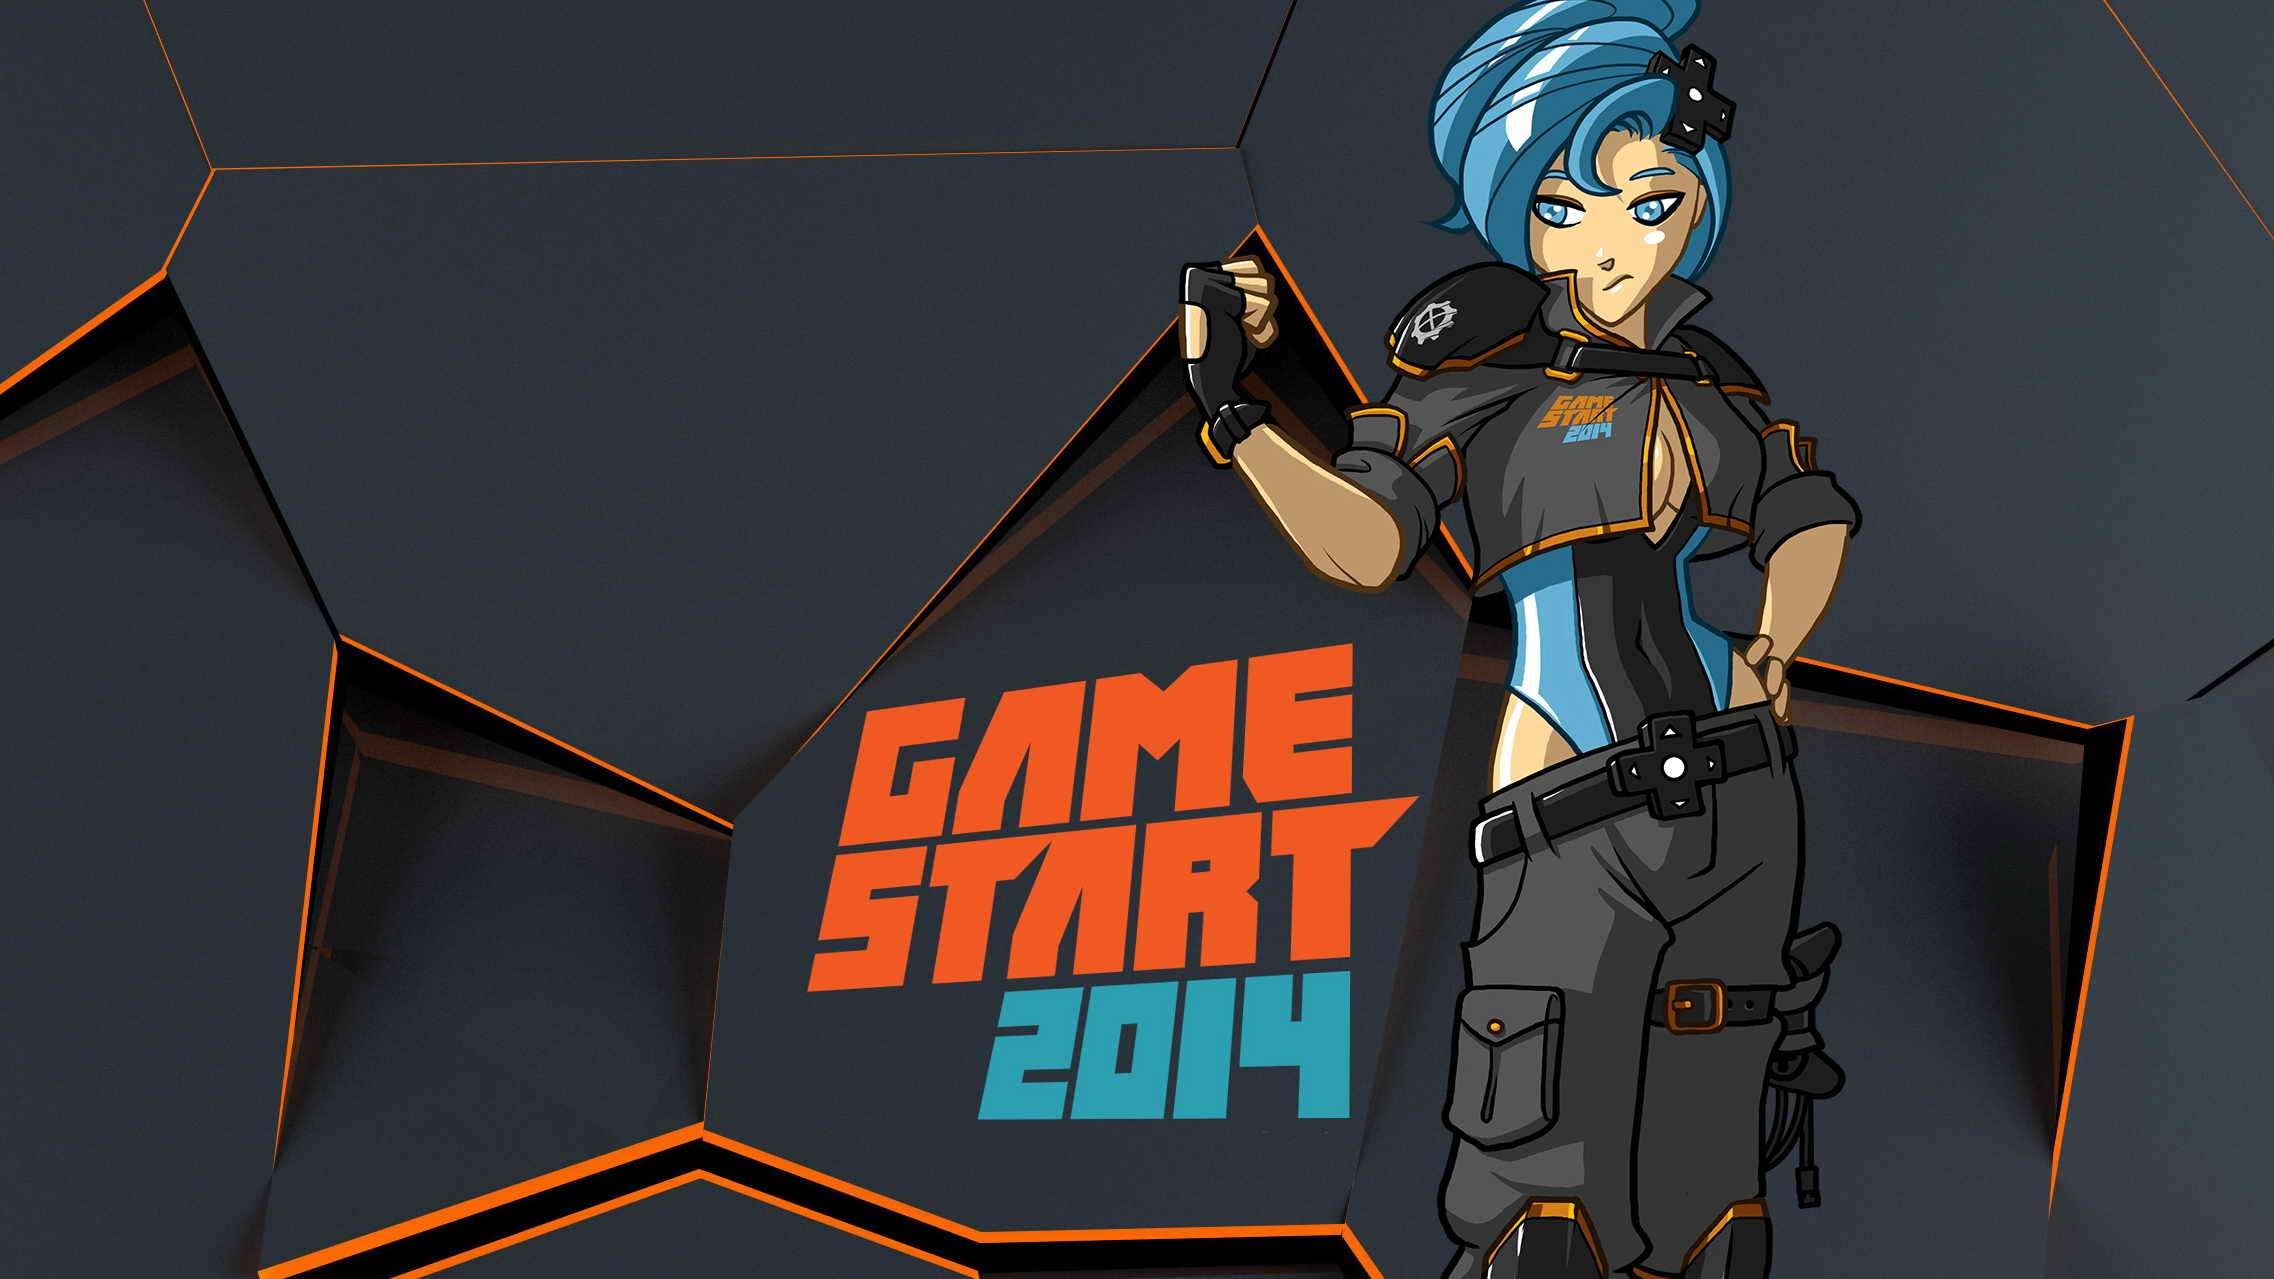 GameStart 2014: Giấc mơ game từ “con rồng châu Á”